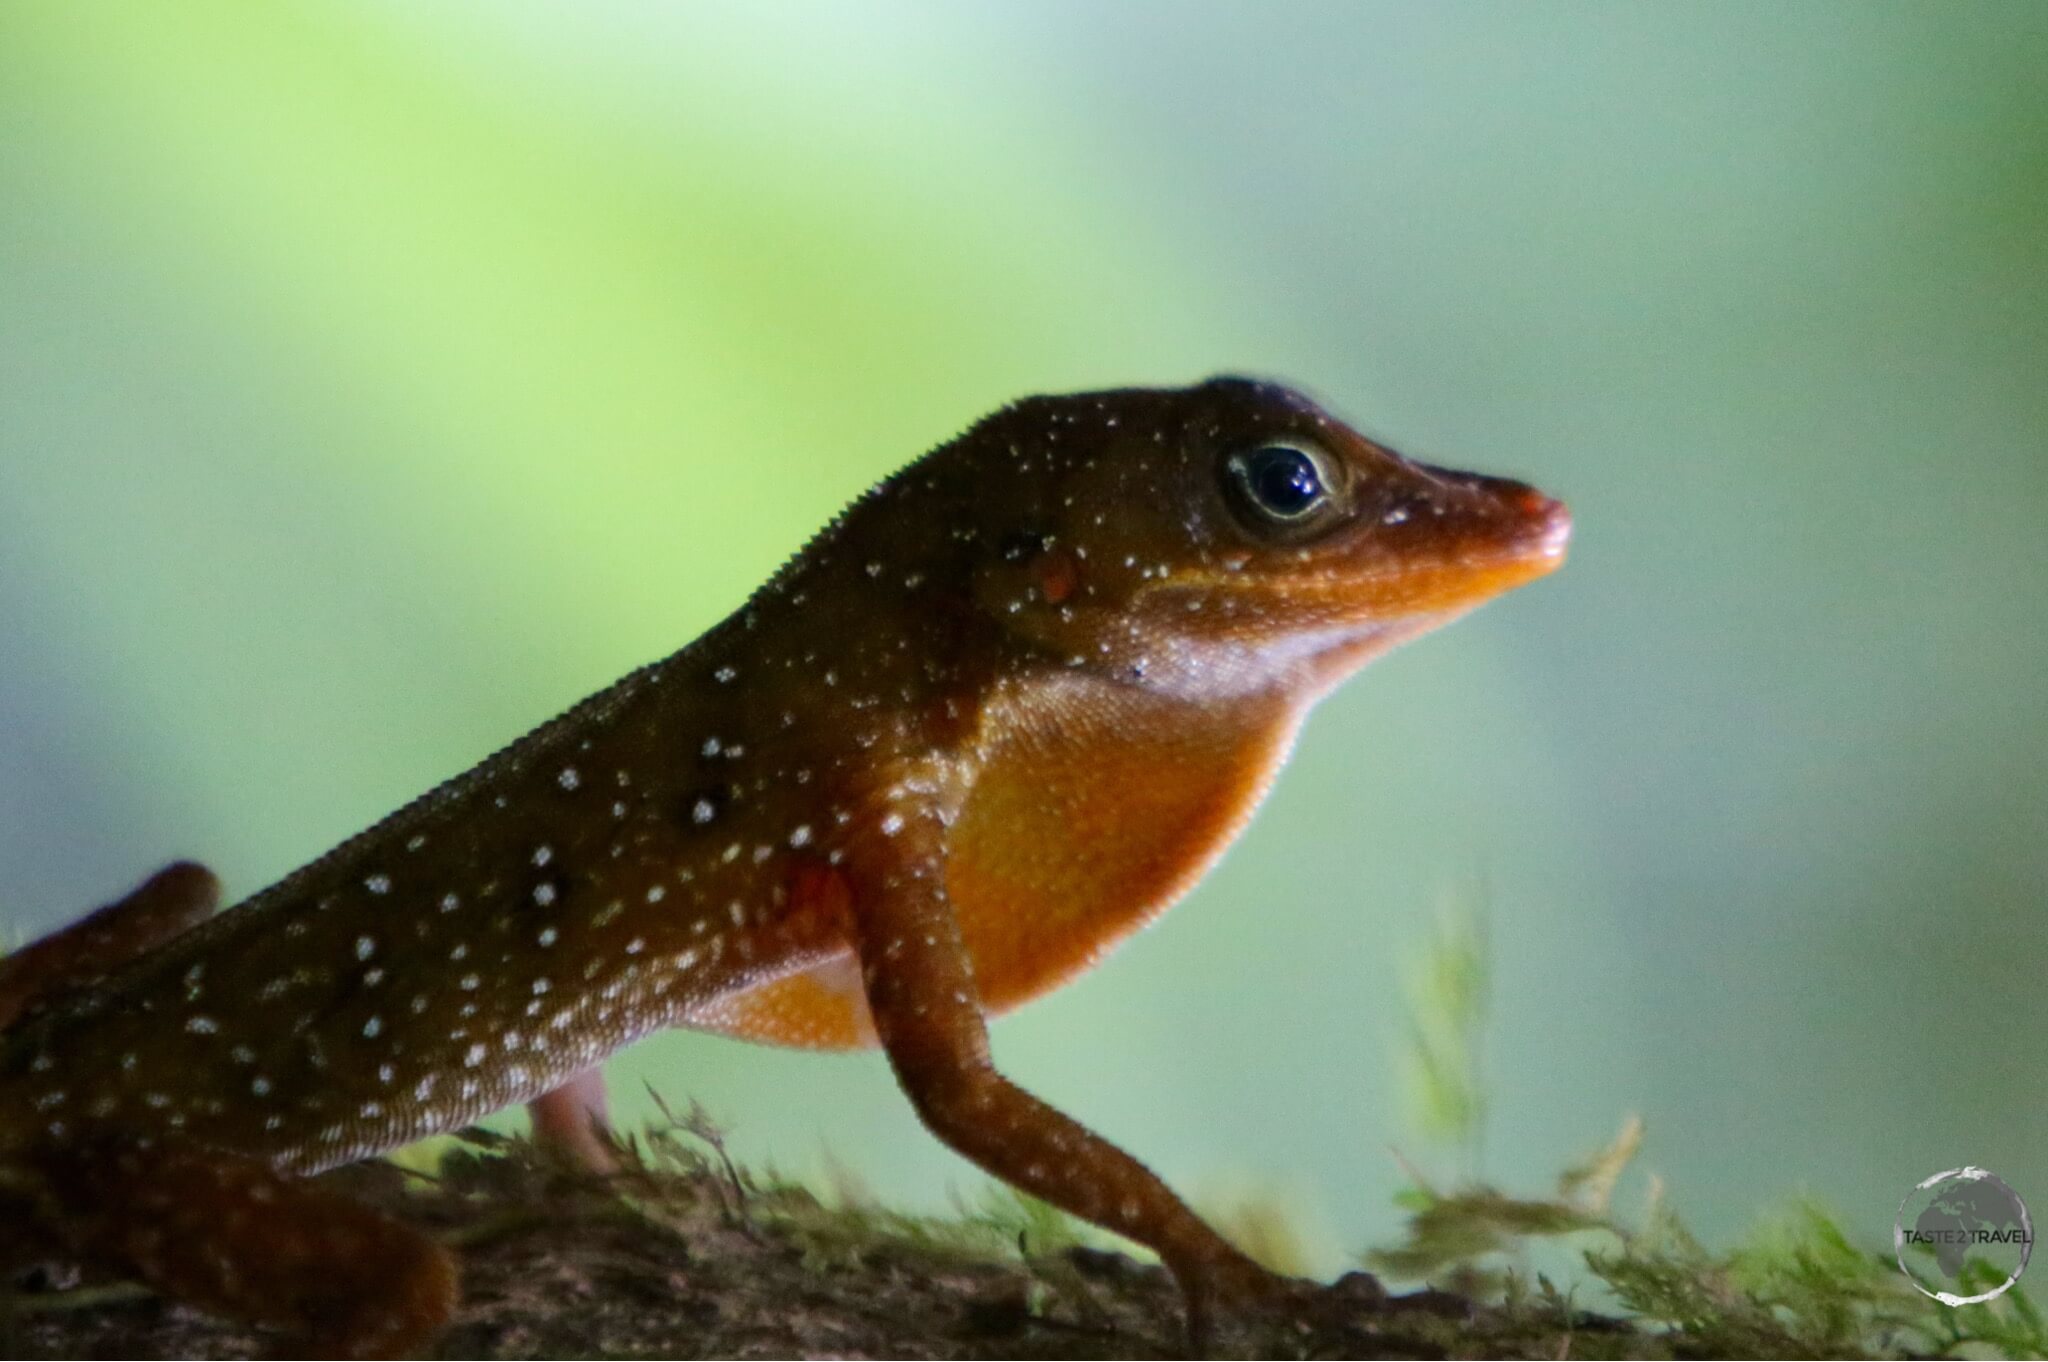 Dominican tree lizard - or 'Zandoli' at the Emerald Pool, Dominica.